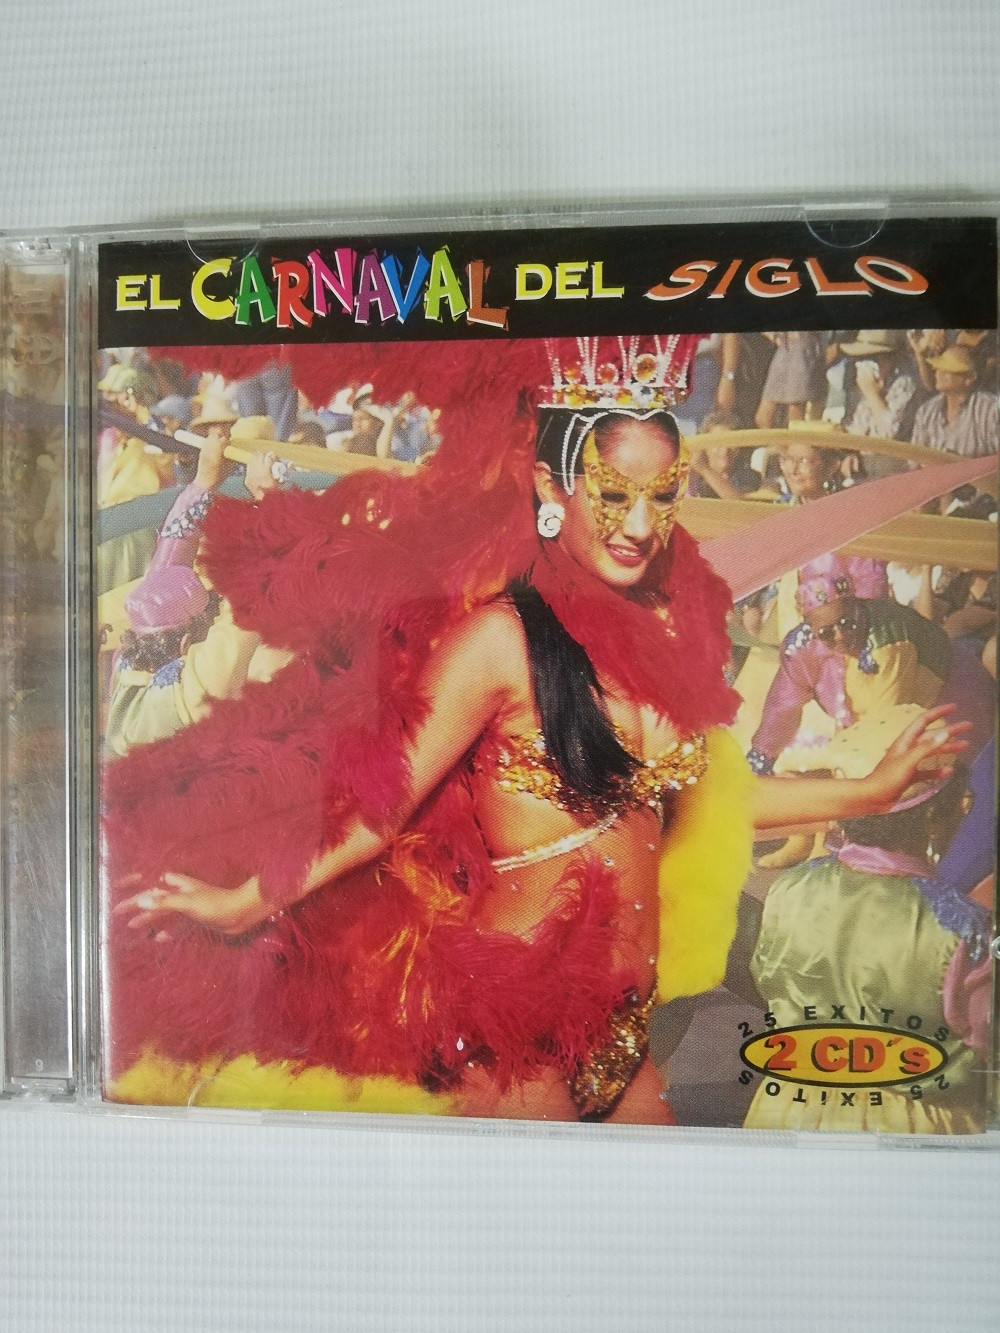 Imagen CD X 2 EL CARNAVAL DEL SIGLO - 25 EXITOS